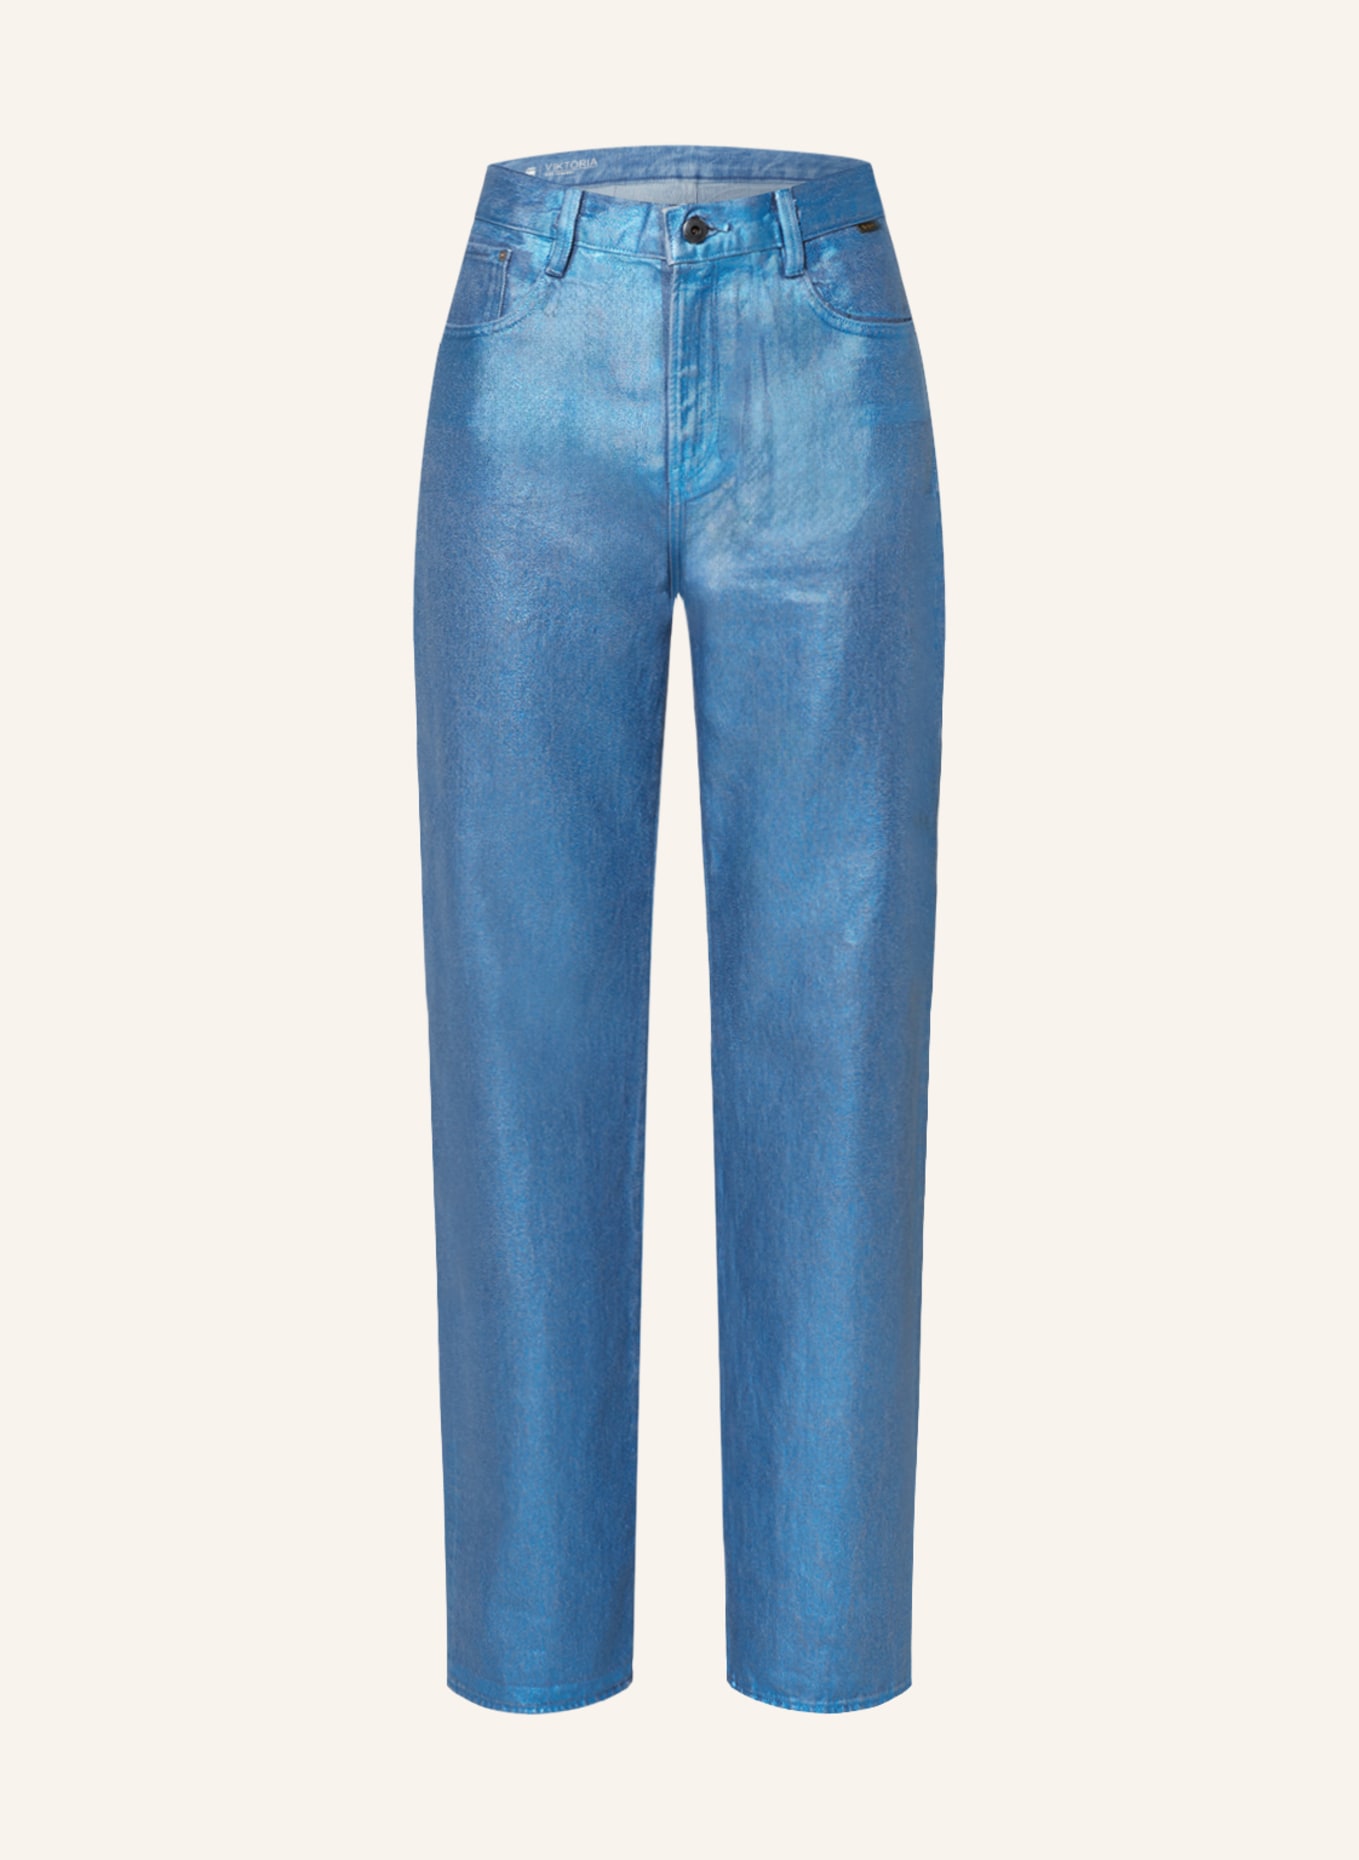 G-Star RAW Straight Jeans VIKTORIA, Farbe: G264 luna blue metal coating (Bild 1)